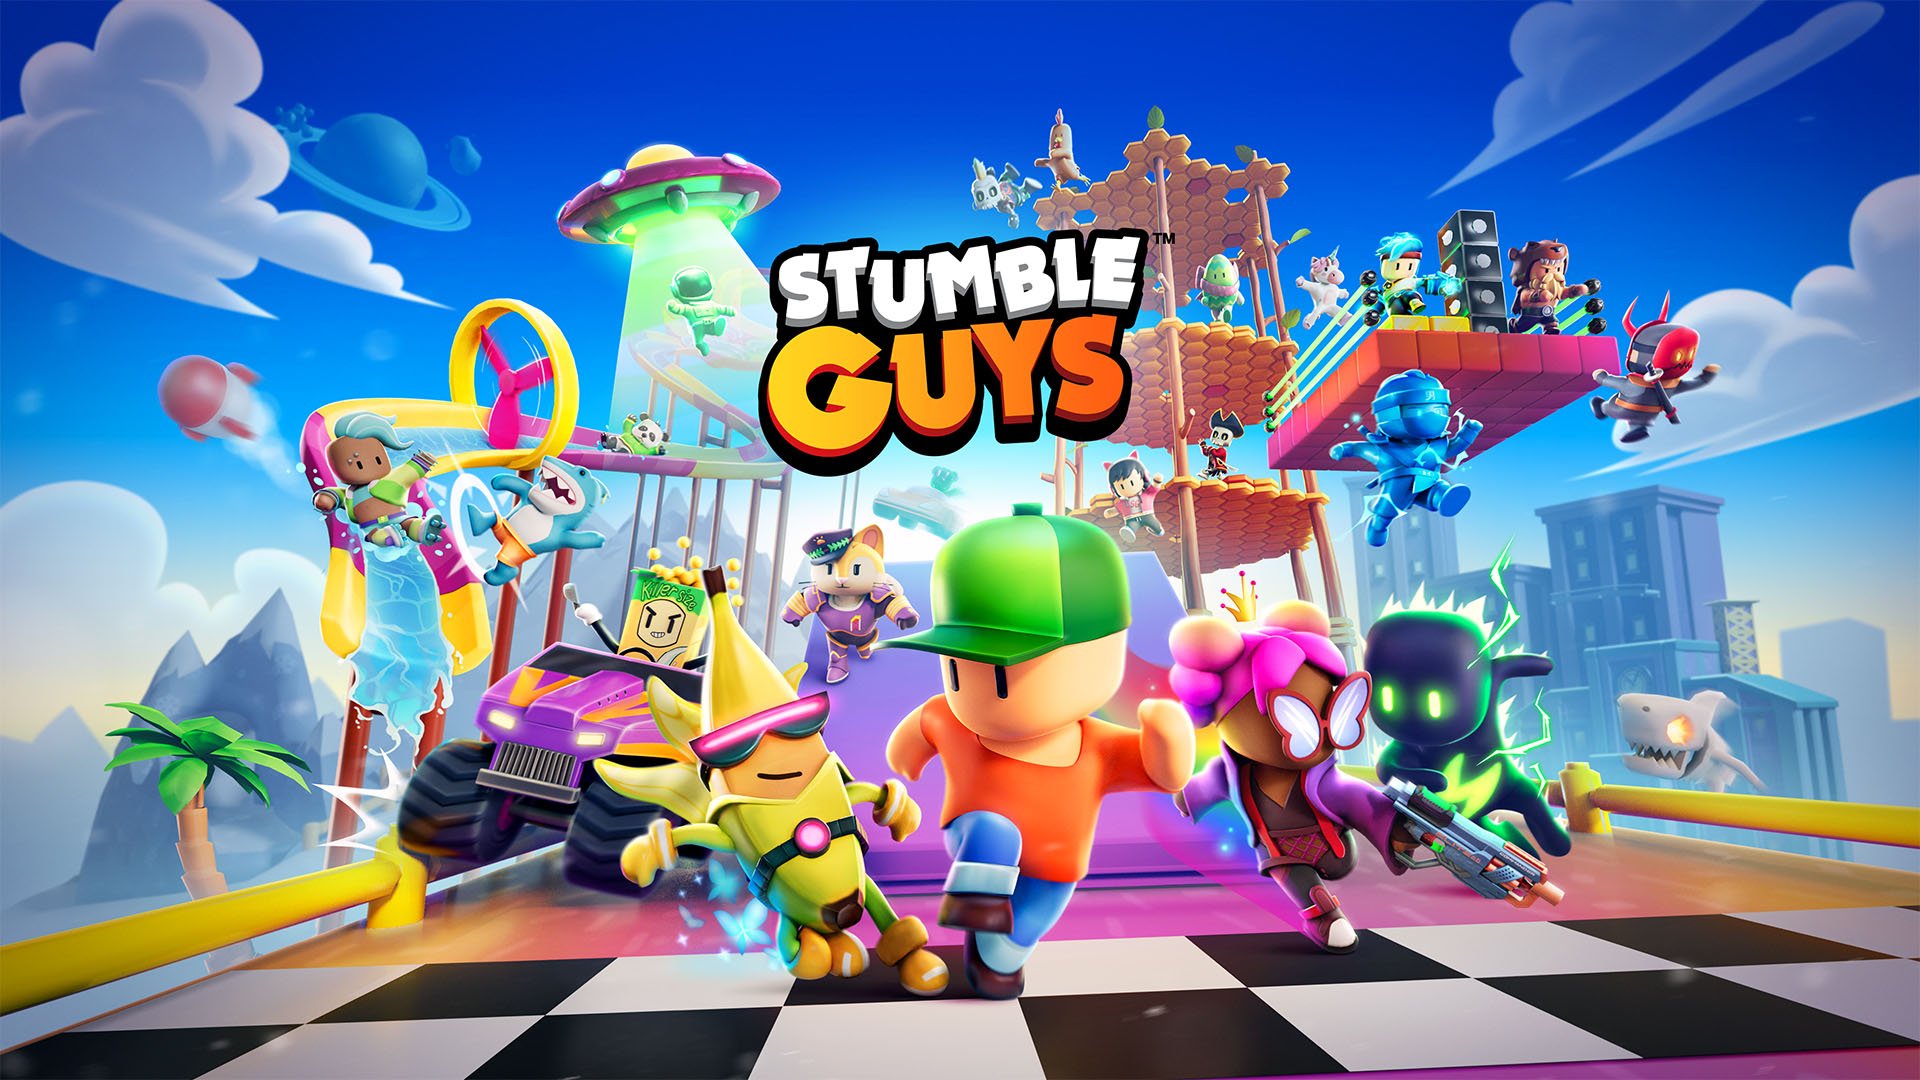 Stumble Guys - PC Gameplay Part 3 